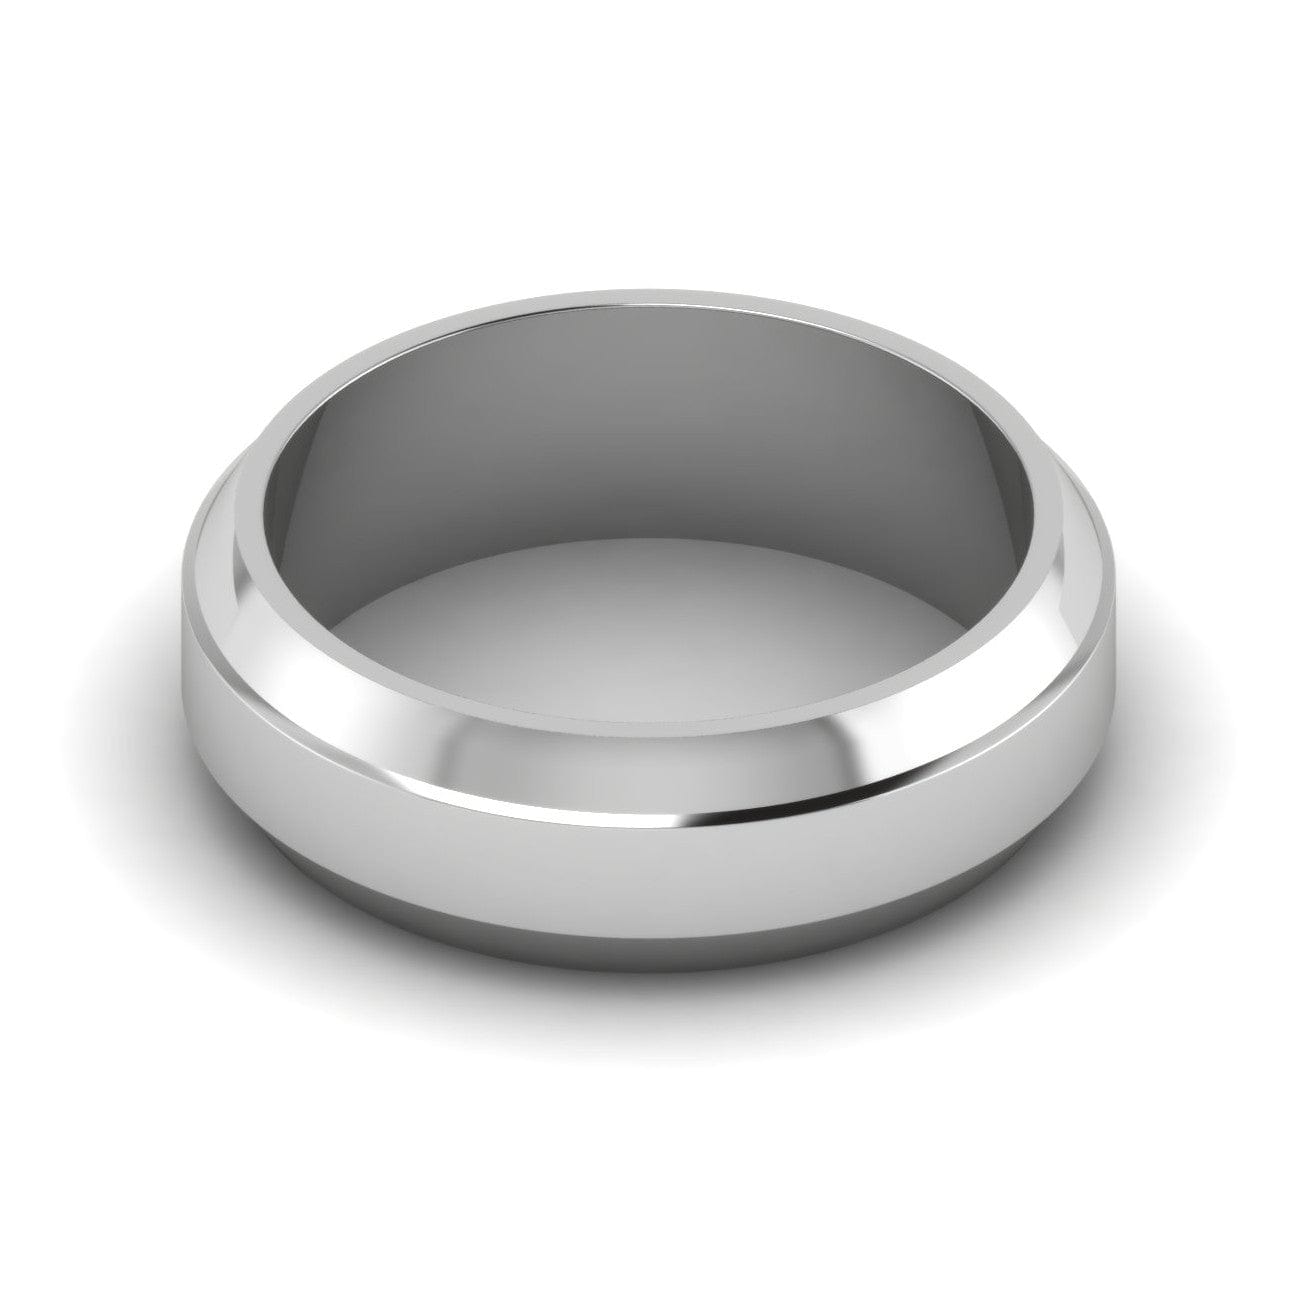 Platinum ring Van Cleef & Arpels Silver size 9 ½ US in Platinum - 25499073